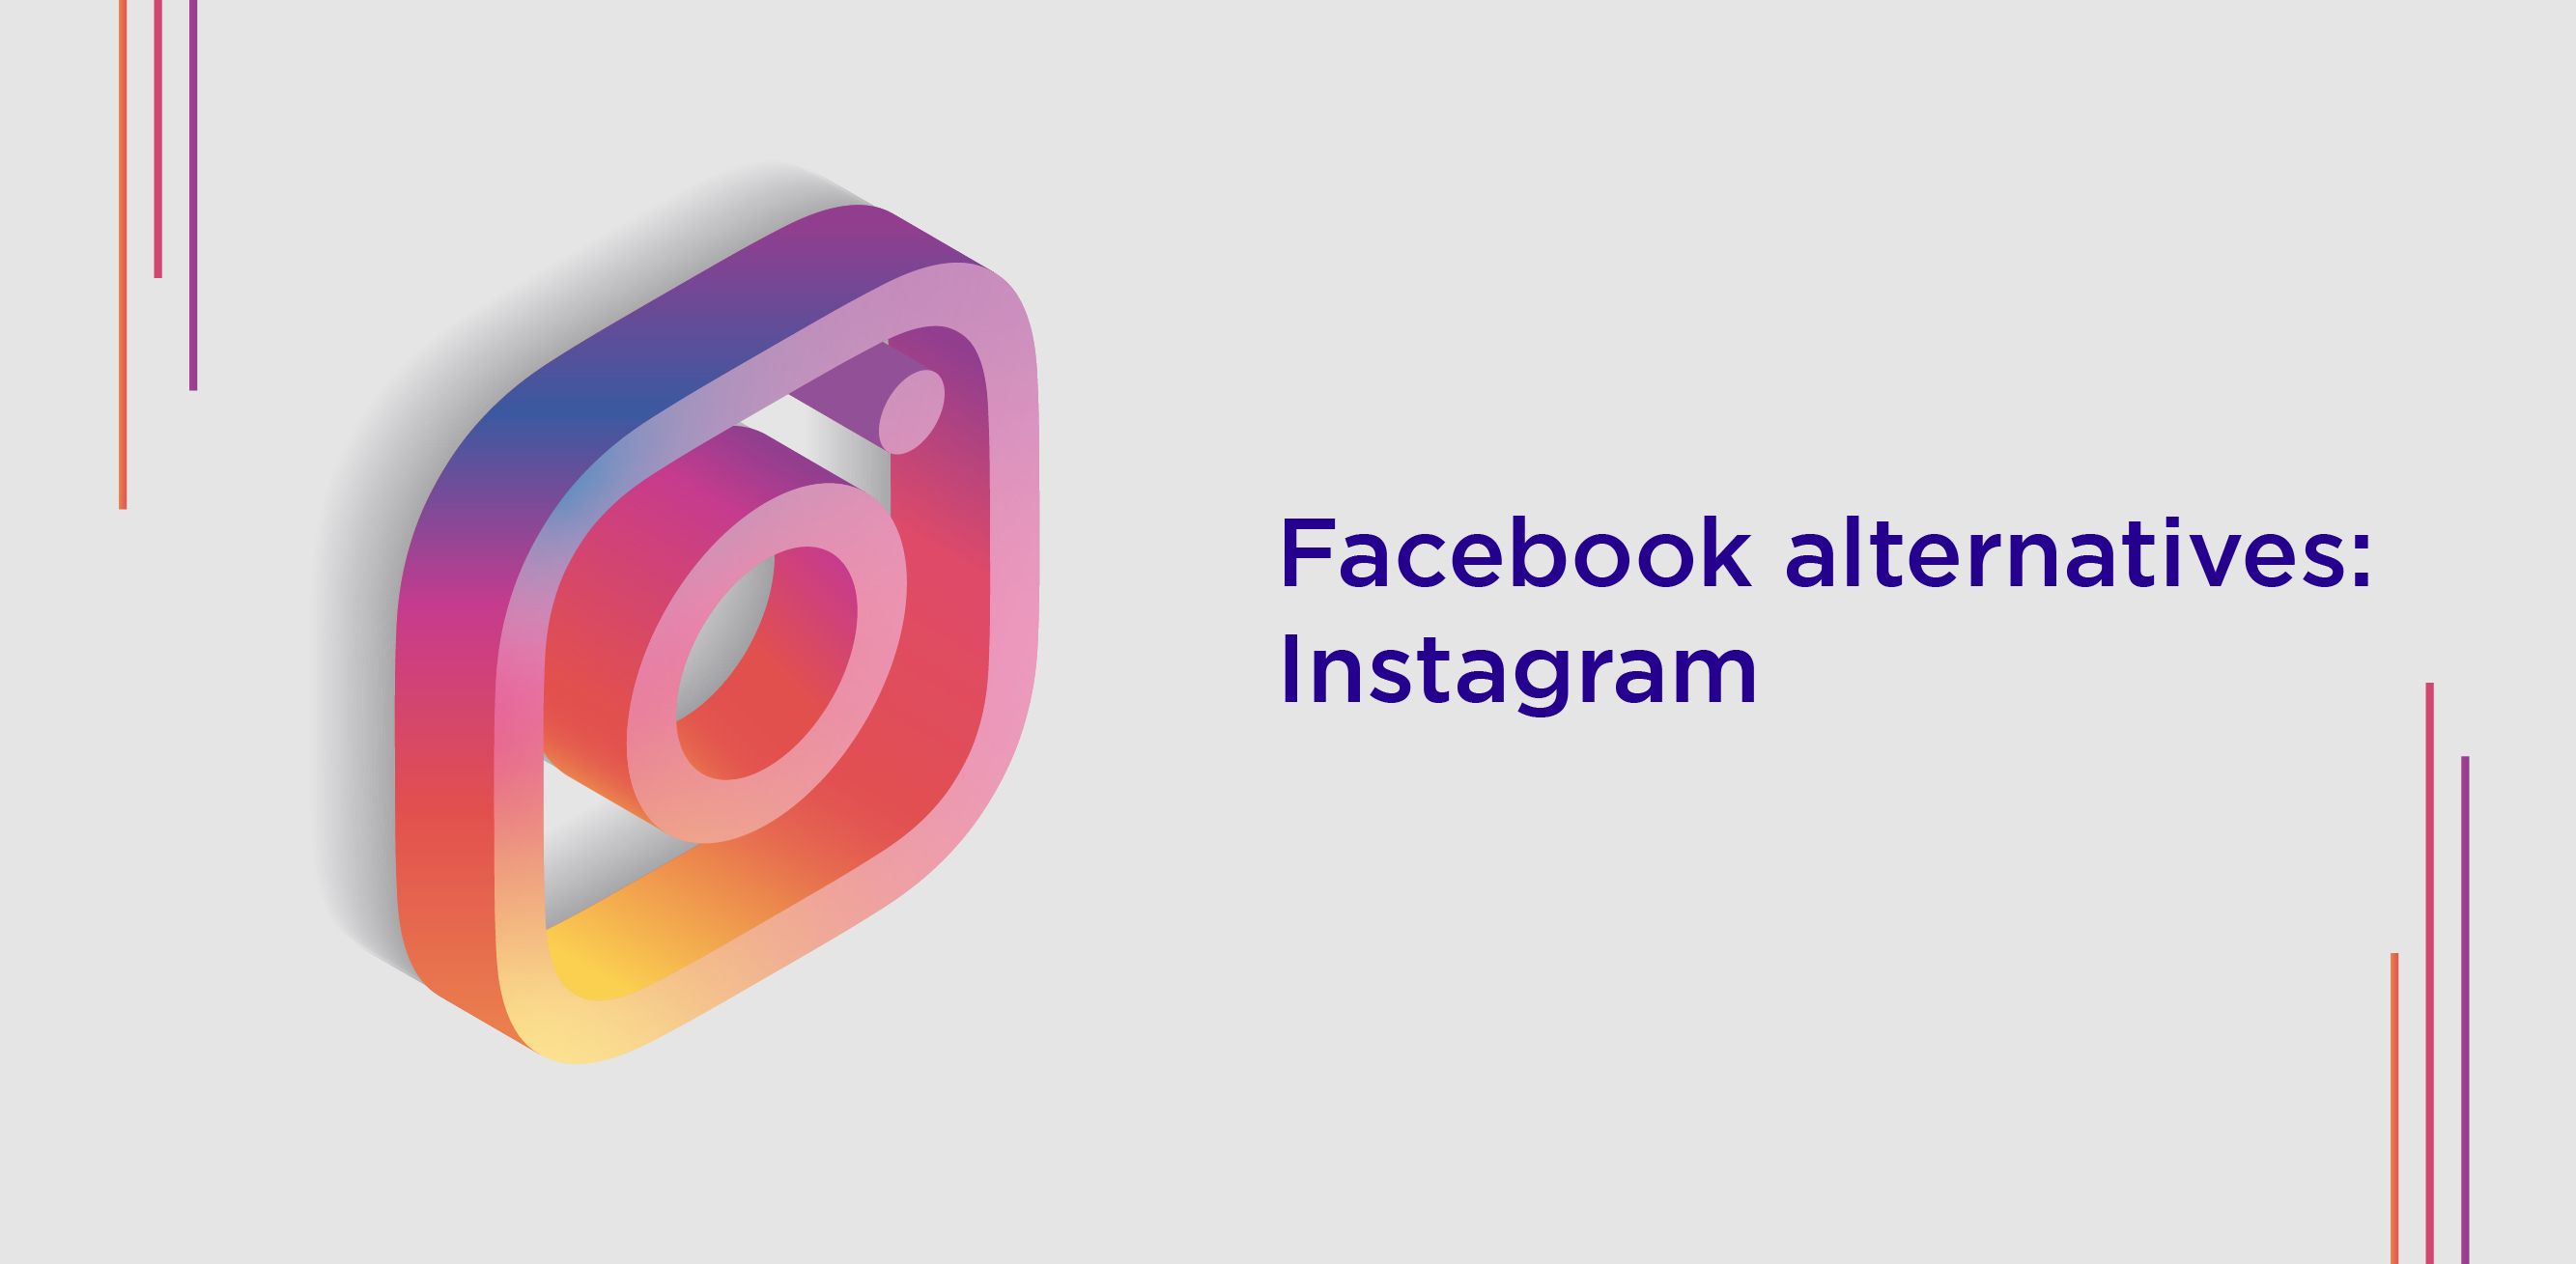 Facebook alternatives Instagram